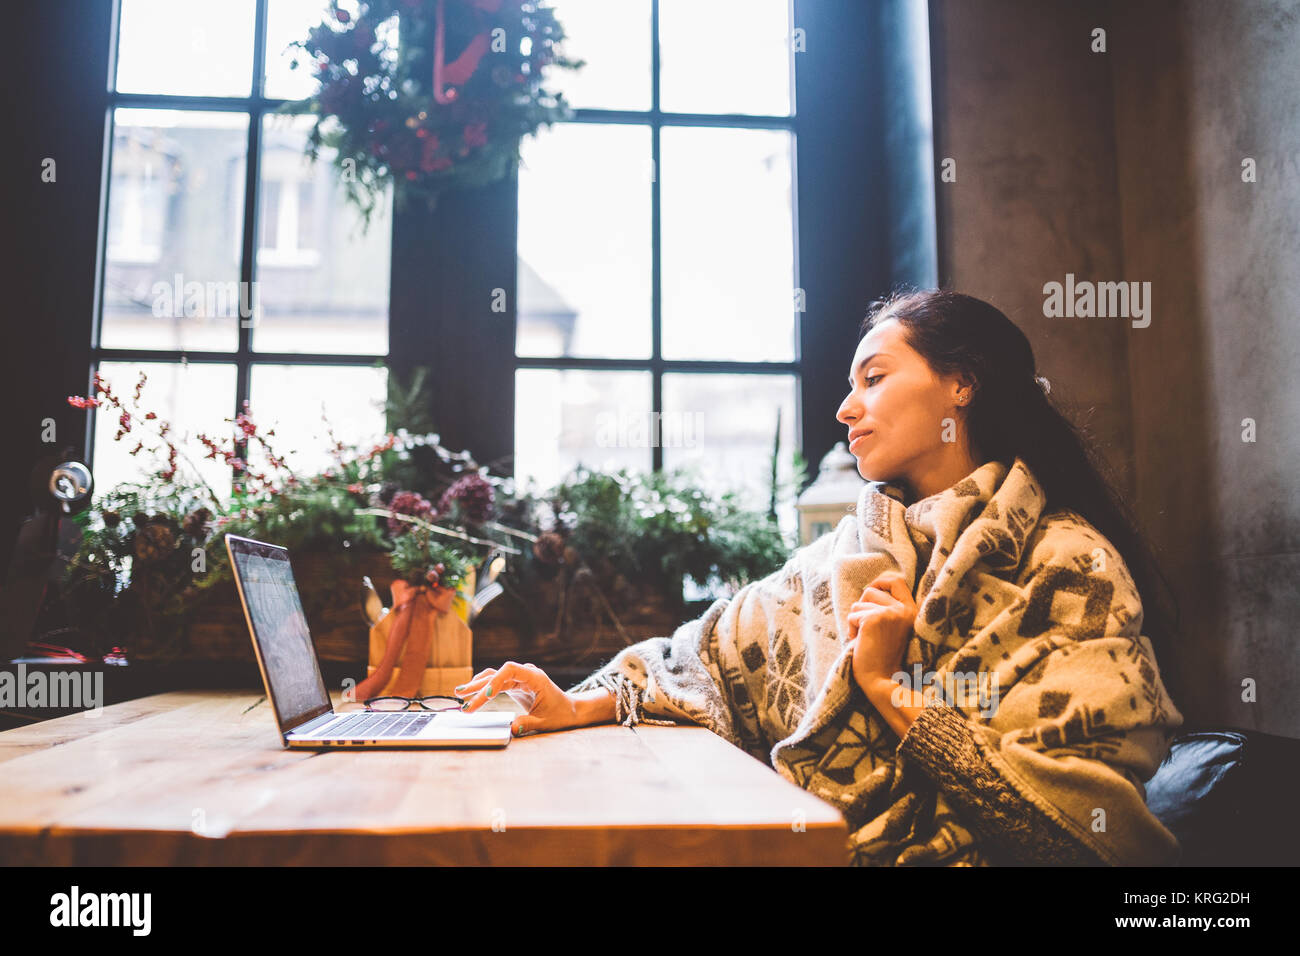 Belle jeune fille utilise la technologie de l'ordinateur portable, les types de texte le moniteur dans un café au bord de la fenêtre, à la table en bois en hiver, décoré avec des décorations de Noël.vêtu d'un pull en laine tricoté gris Banque D'Images